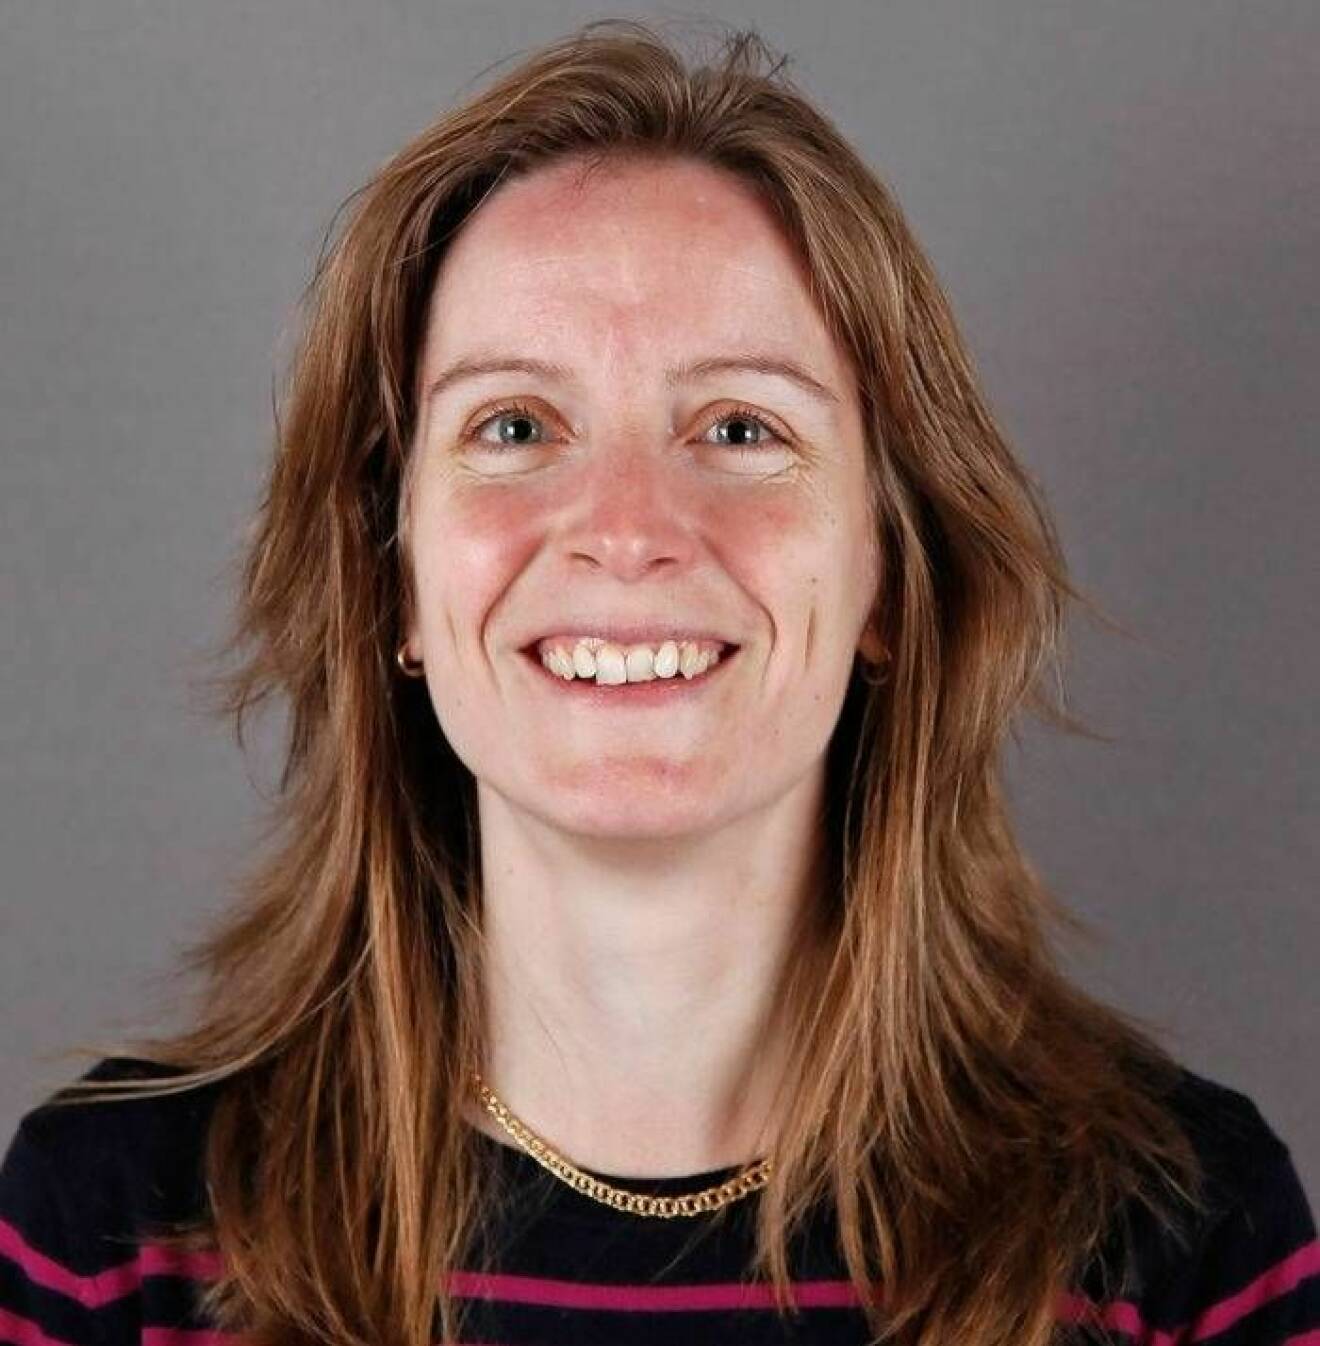 Susanna Larsson vid Institutet för miljömedicin, Karolinska institutet forskar om sambandet mellan kost och sjukdom.